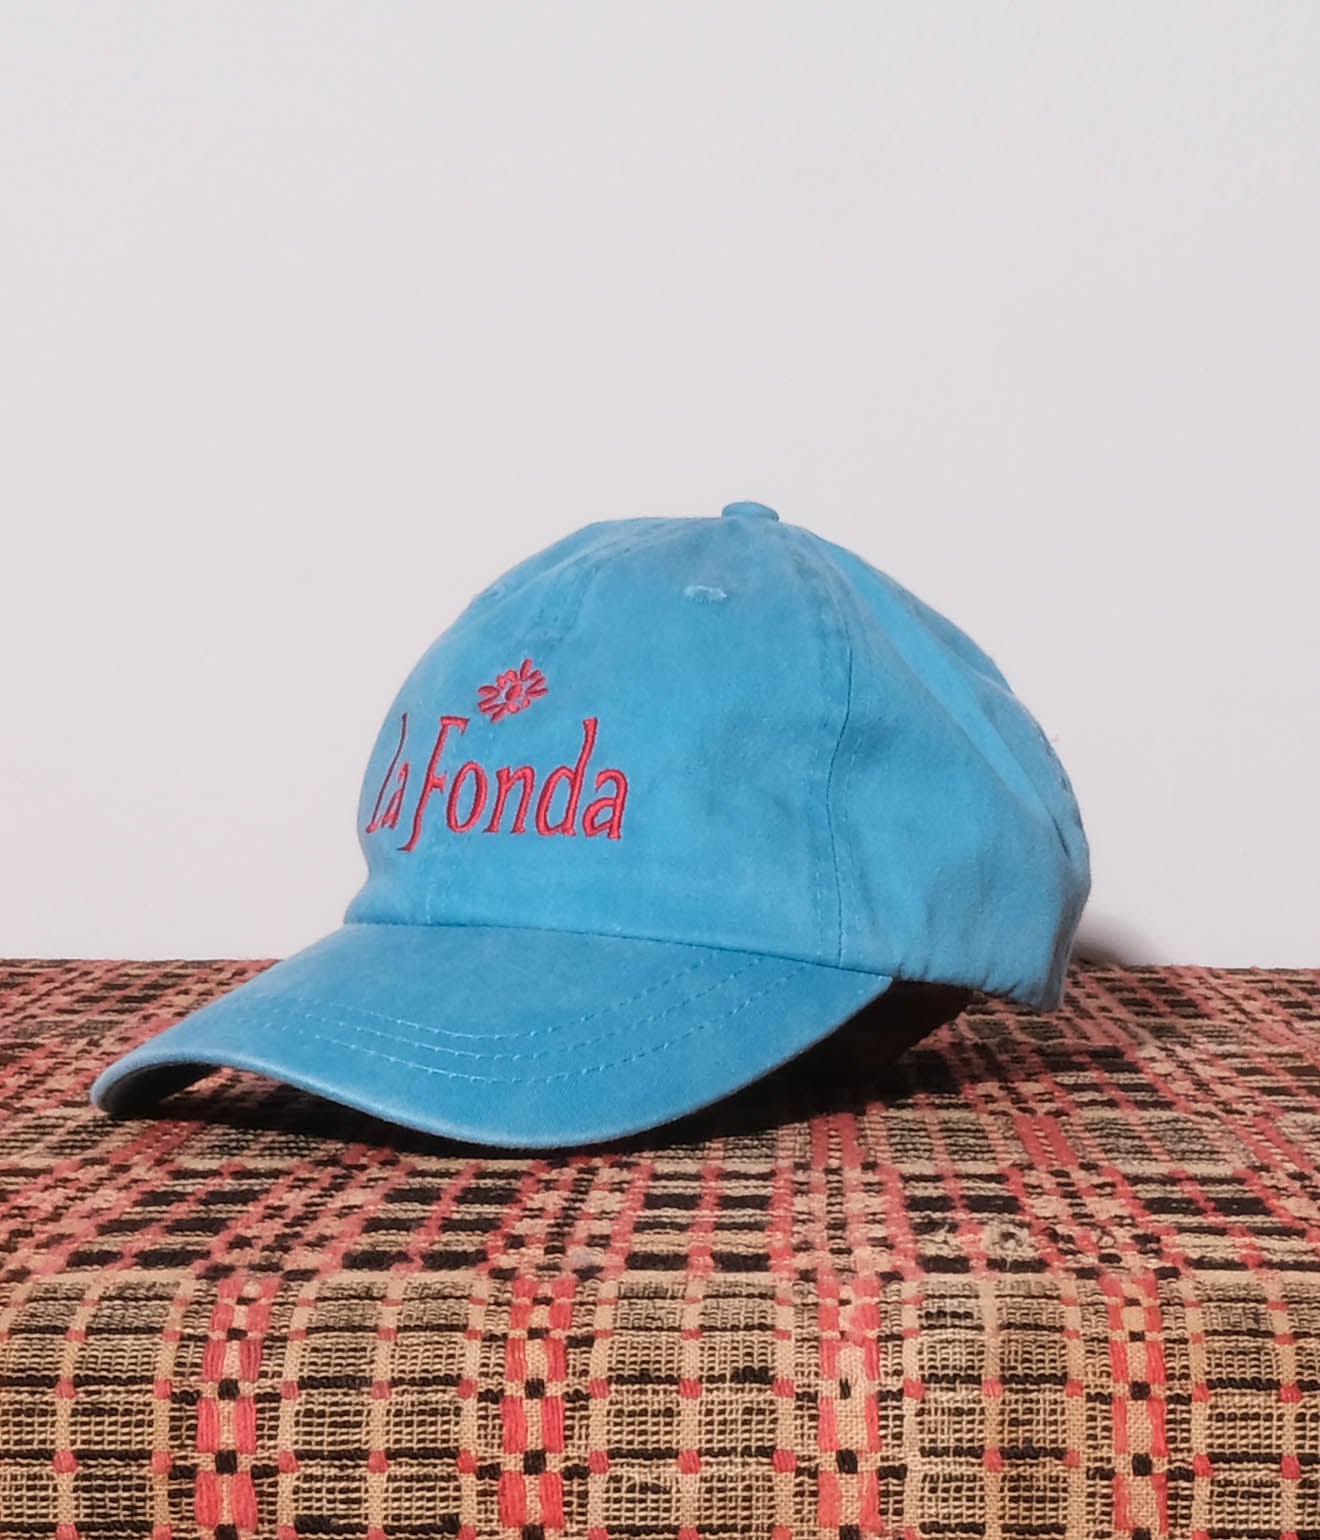 Souvenir Goods "La Fonda Hotel Cap" (Blue×Red)